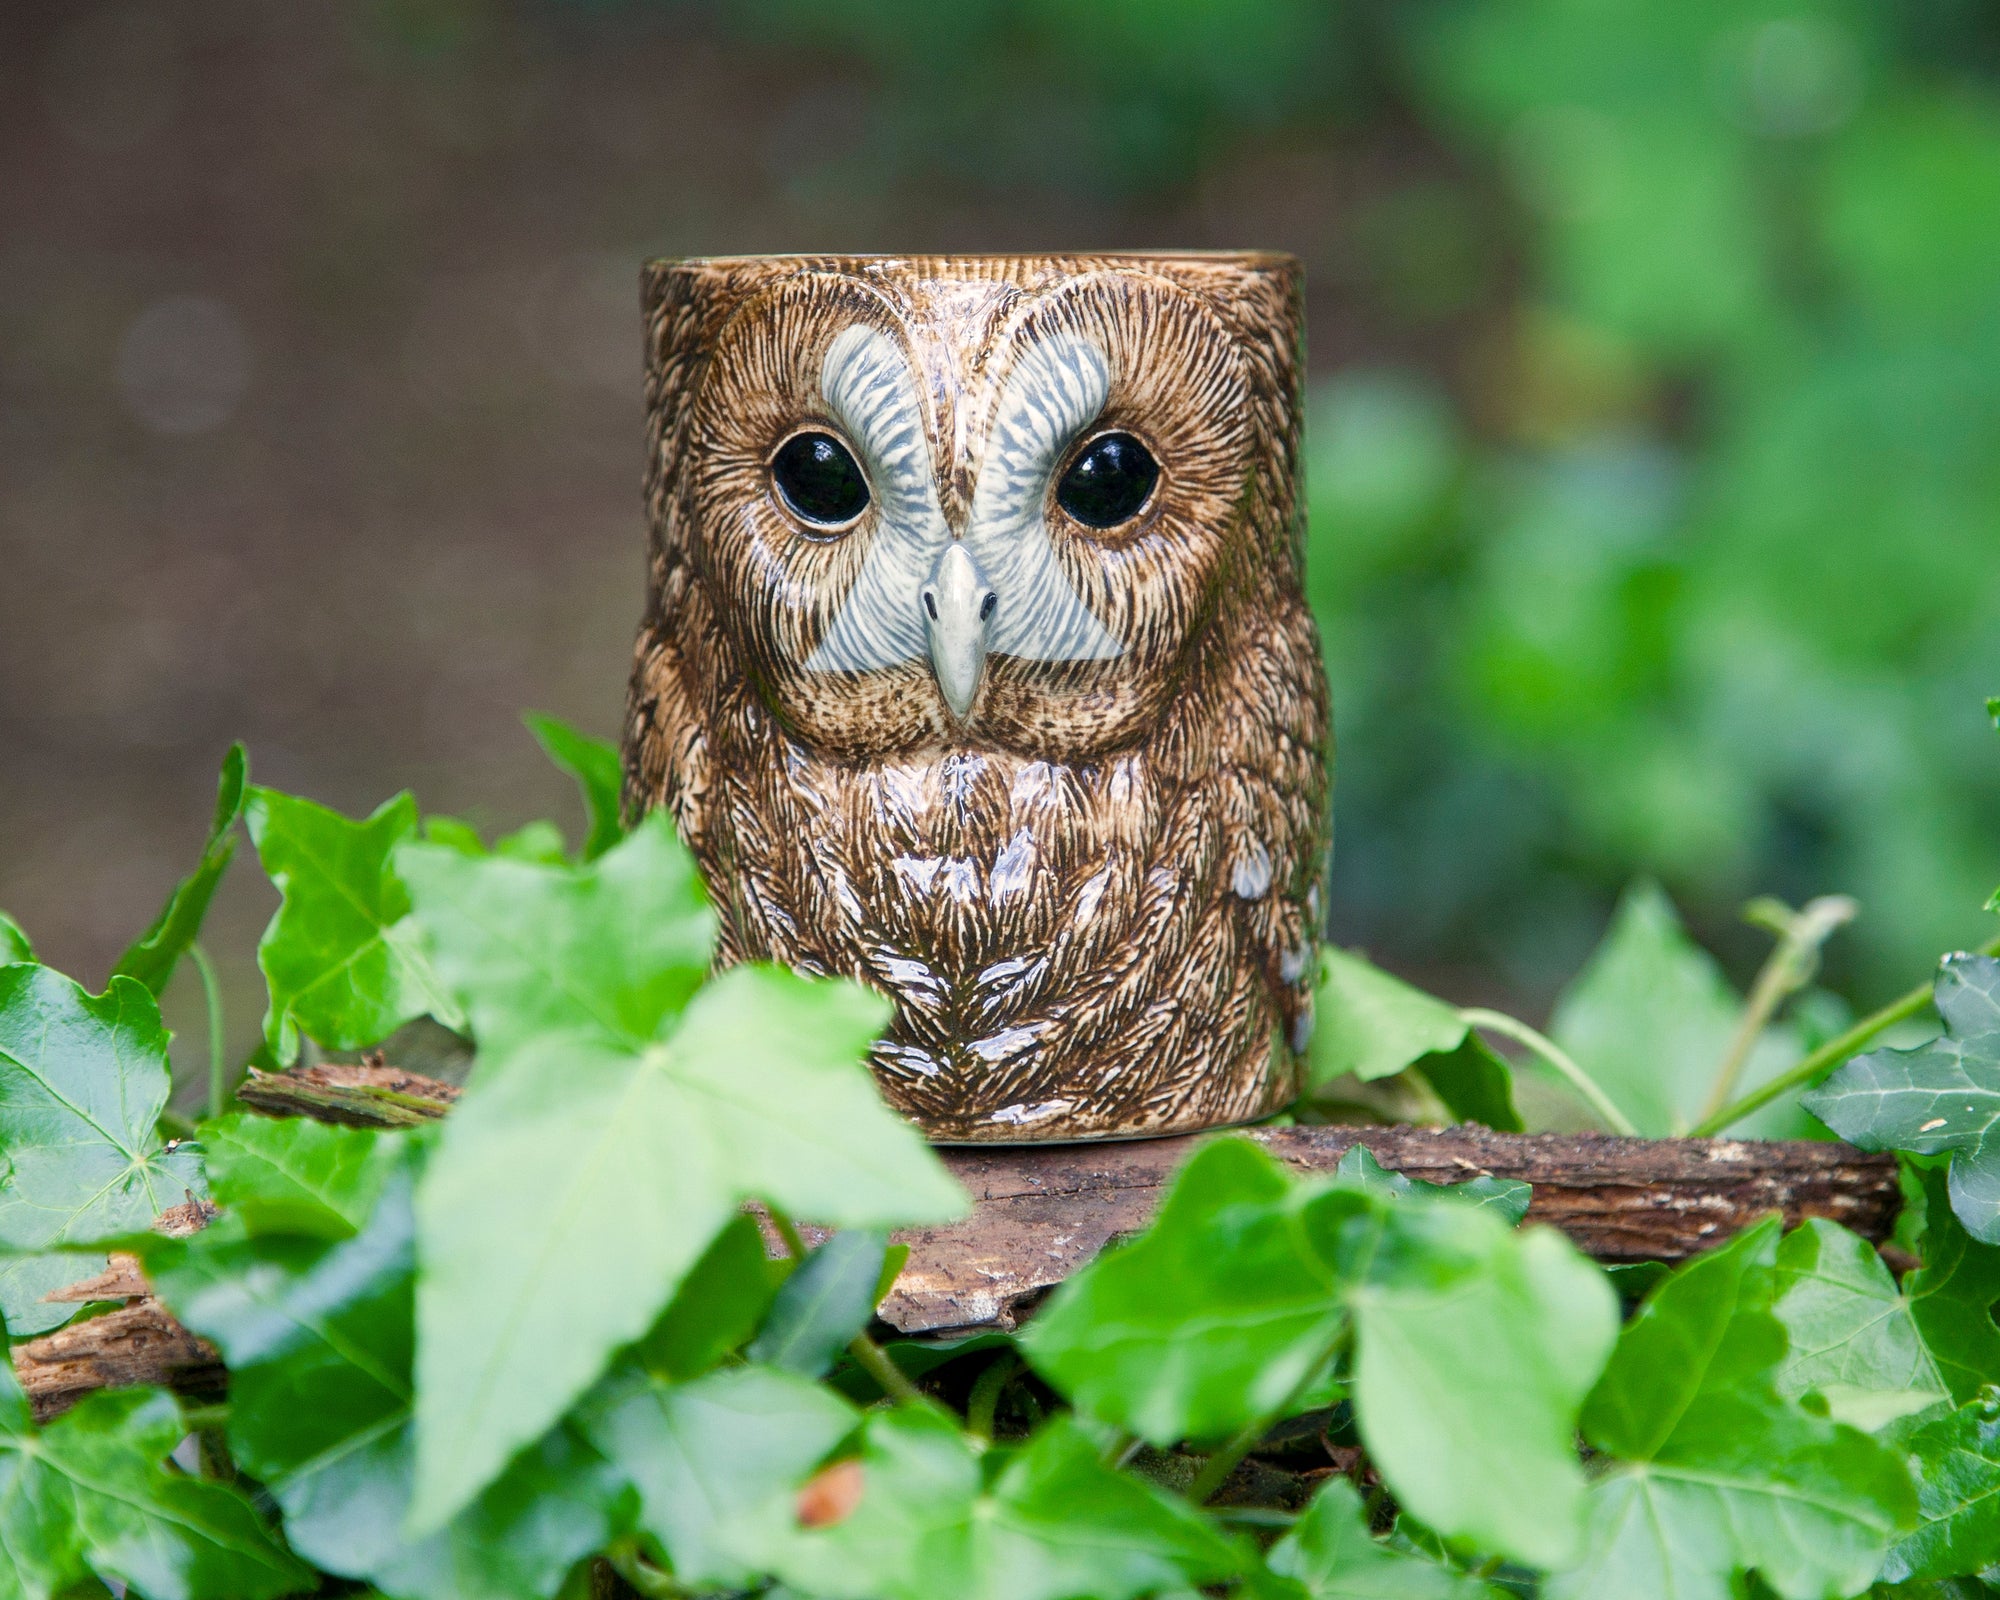 Tawny Owl Pencil Pot